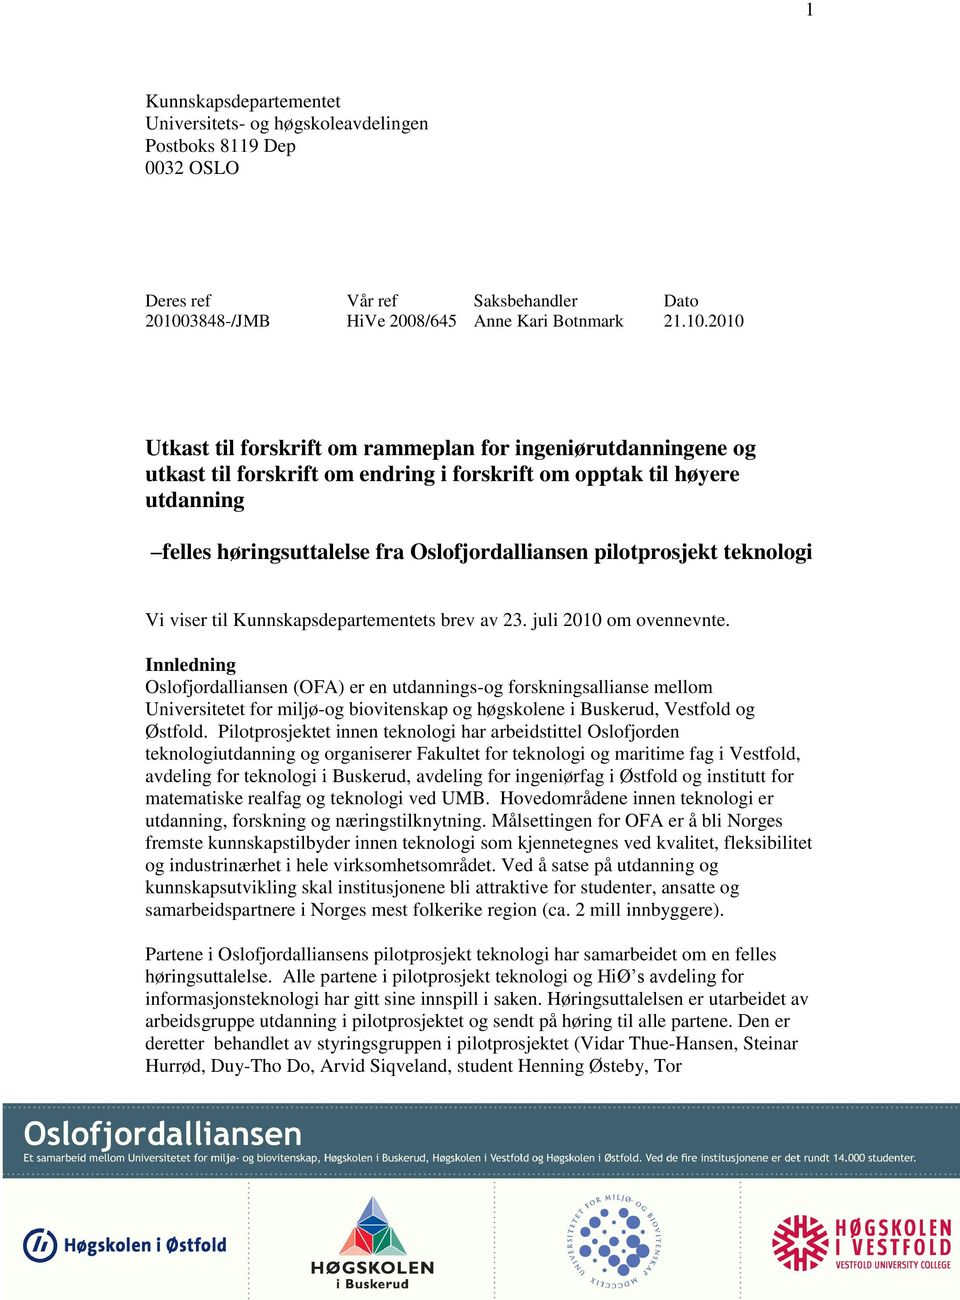 2010 Utkast til forskrift om rammeplan for ingeniørutdanningene og utkast til forskrift om endring i forskrift om opptak til høyere utdanning felles høringsuttalelse fra Oslofjordalliansen